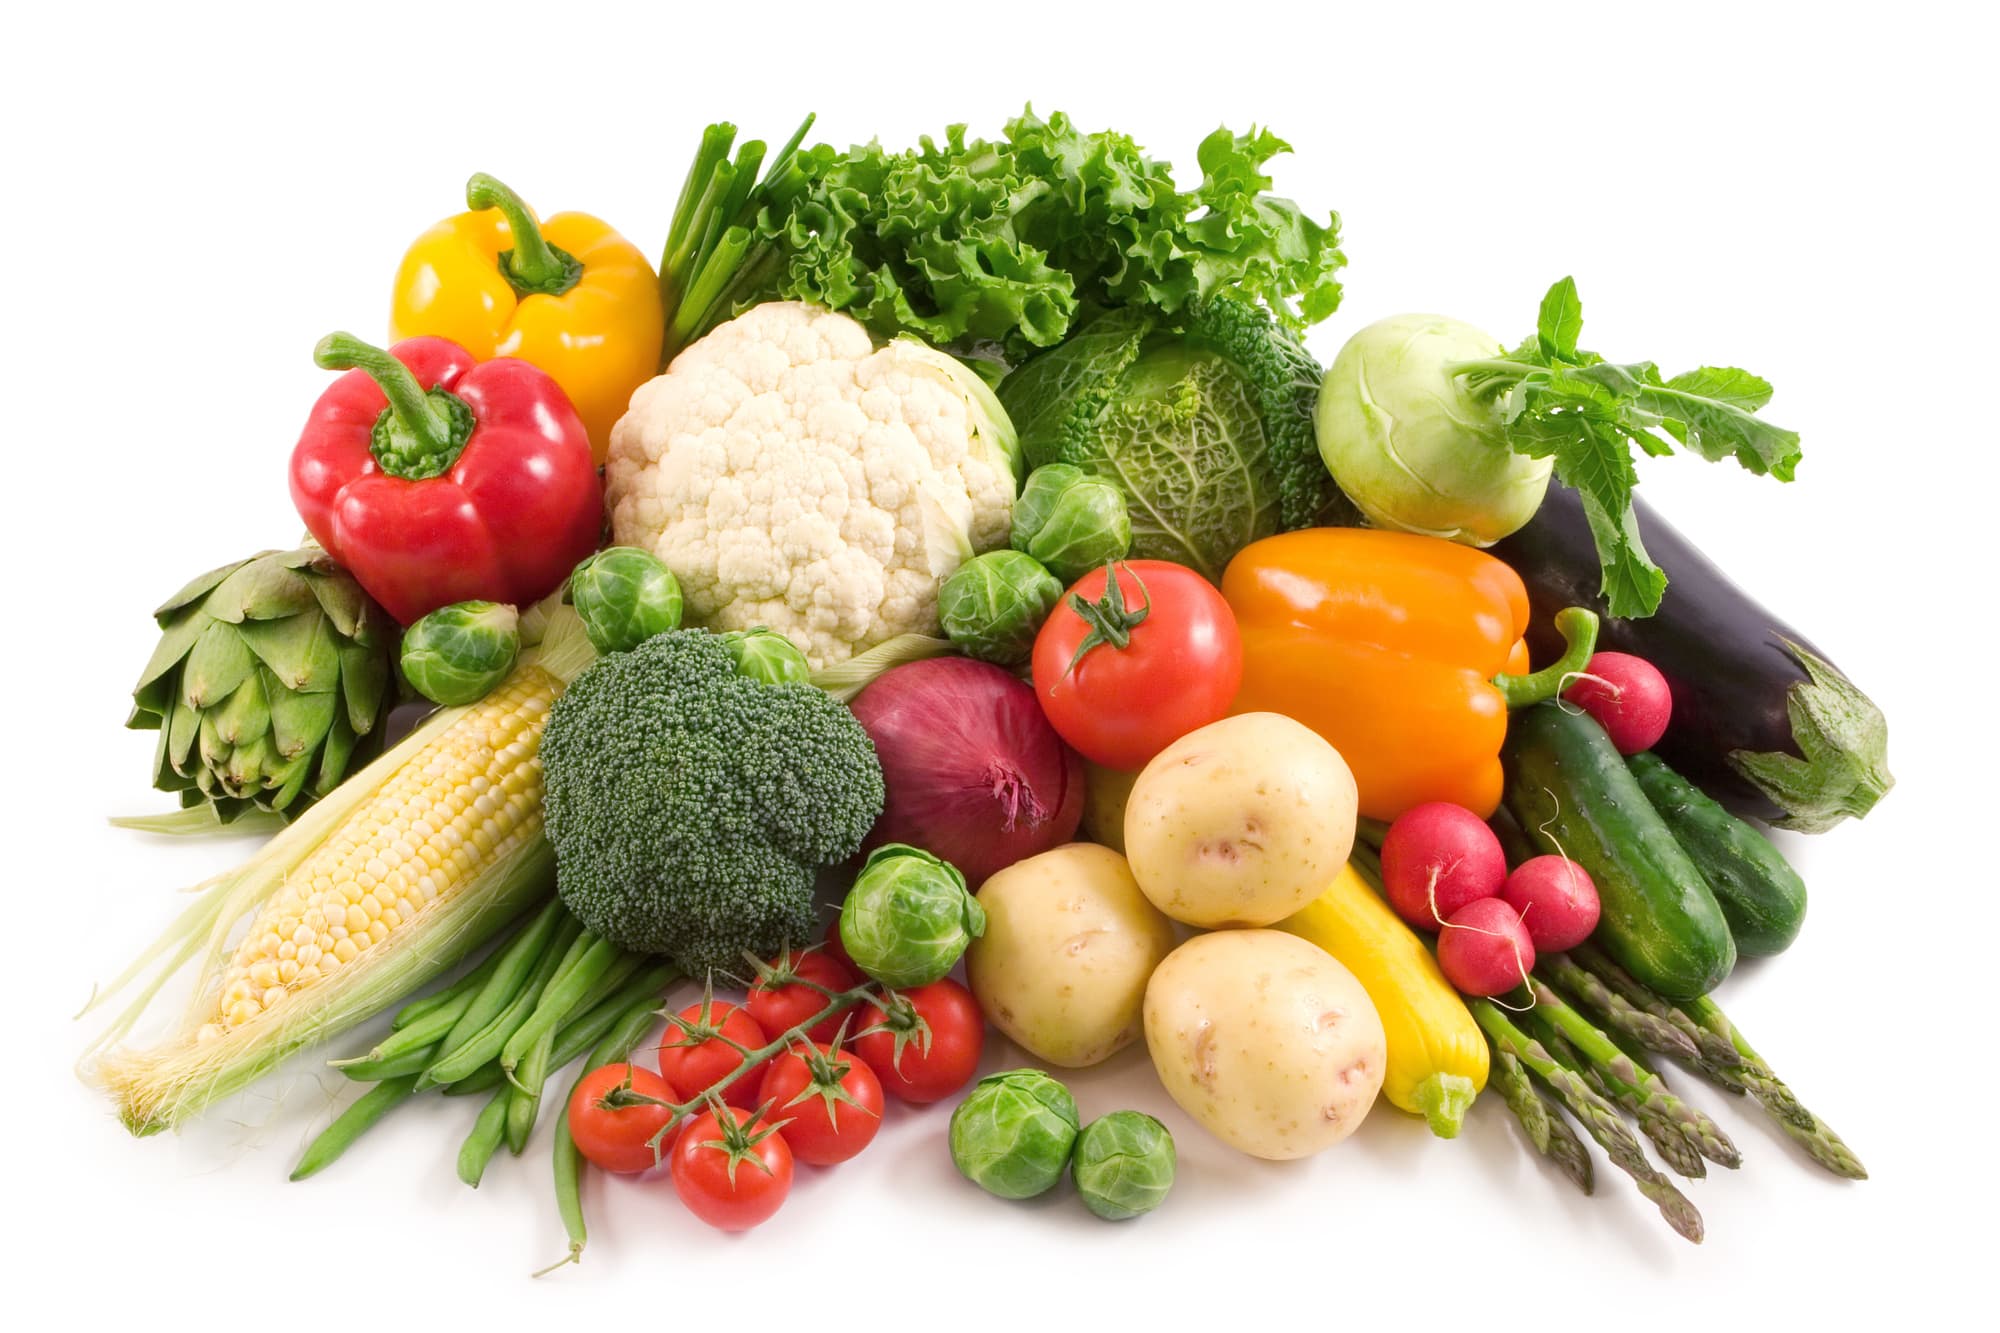 Top 10 Healthiest Vegetables to Include in Your Vegan Diet